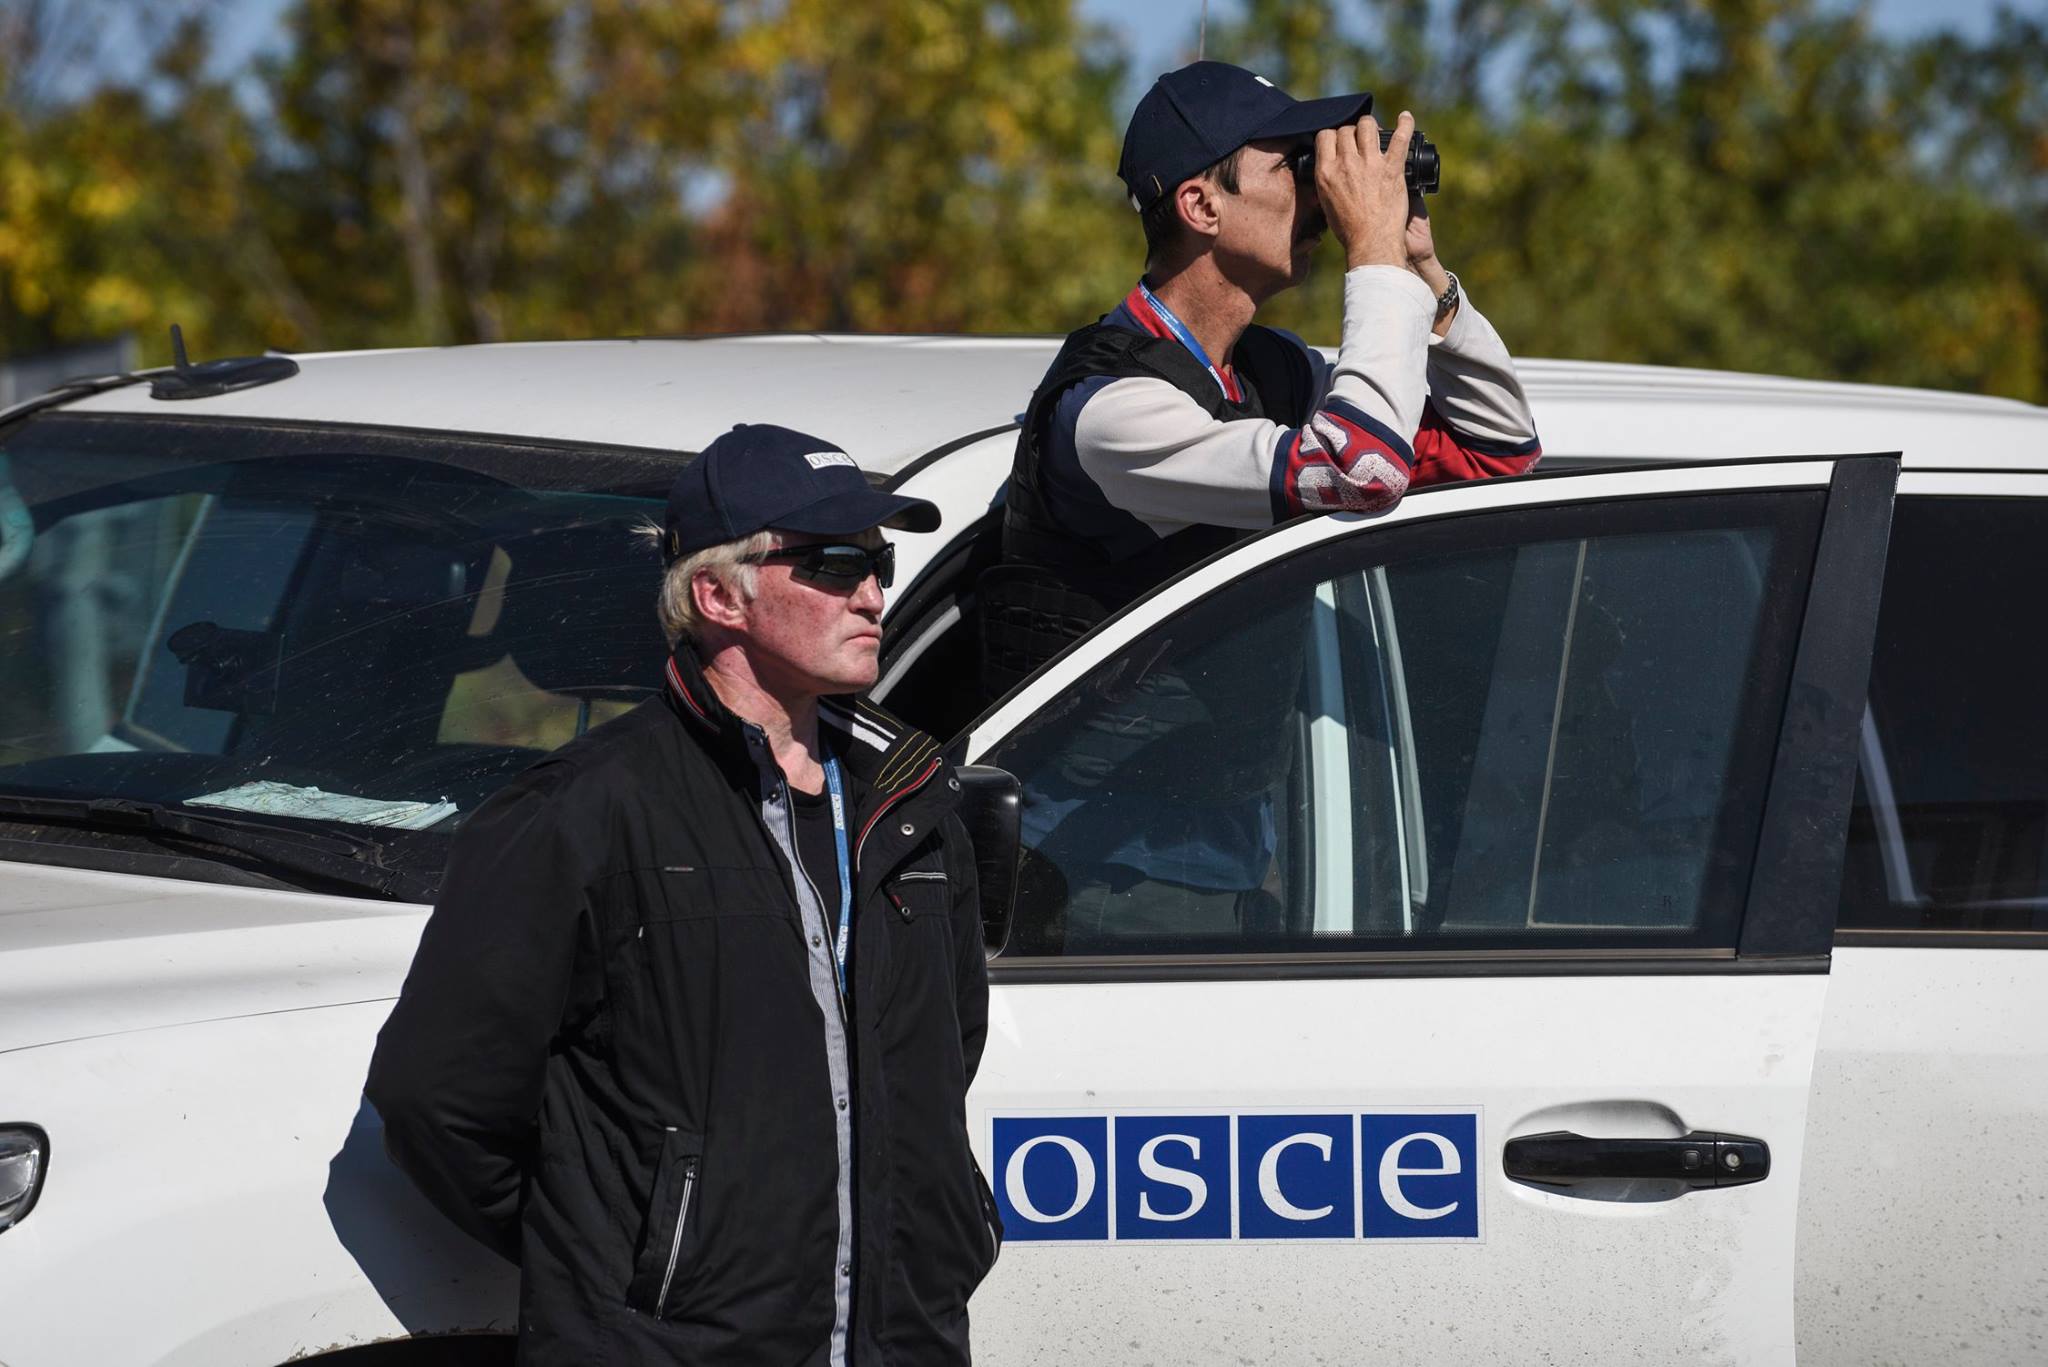  ОБСЕ: в Донецке есть силы, которым невыгодно присутствие наблюдателей в городе